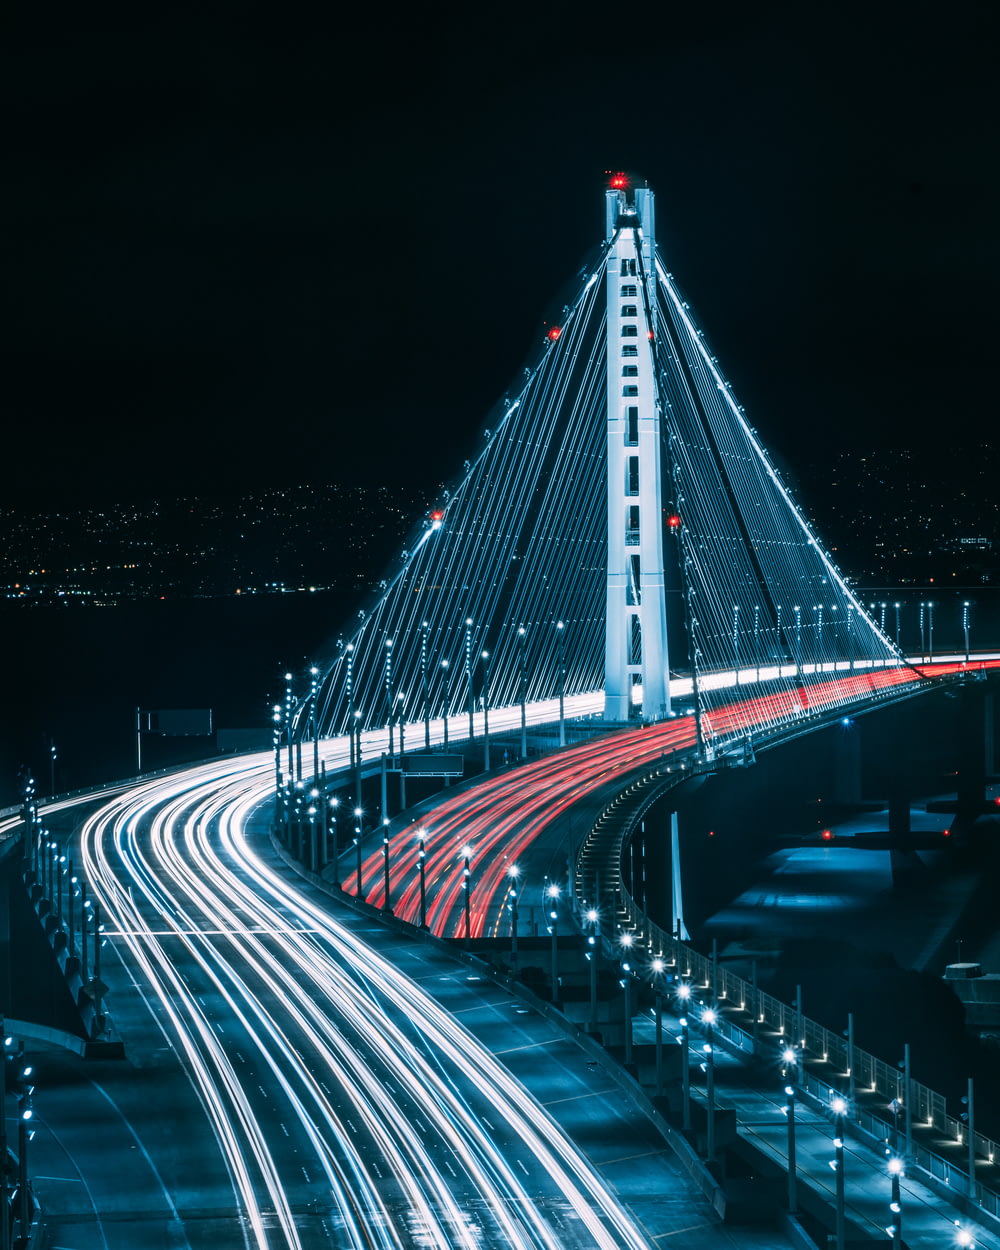 San Francisco bridge during night time